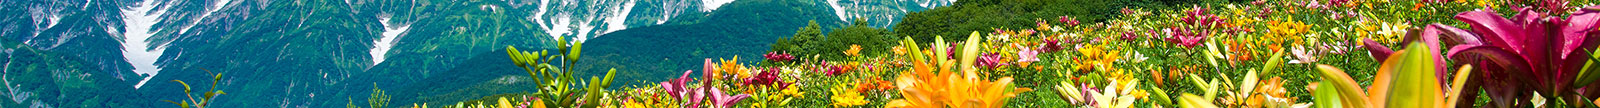 世界級リゾート、山の信州で紡ぐ夏の思い出